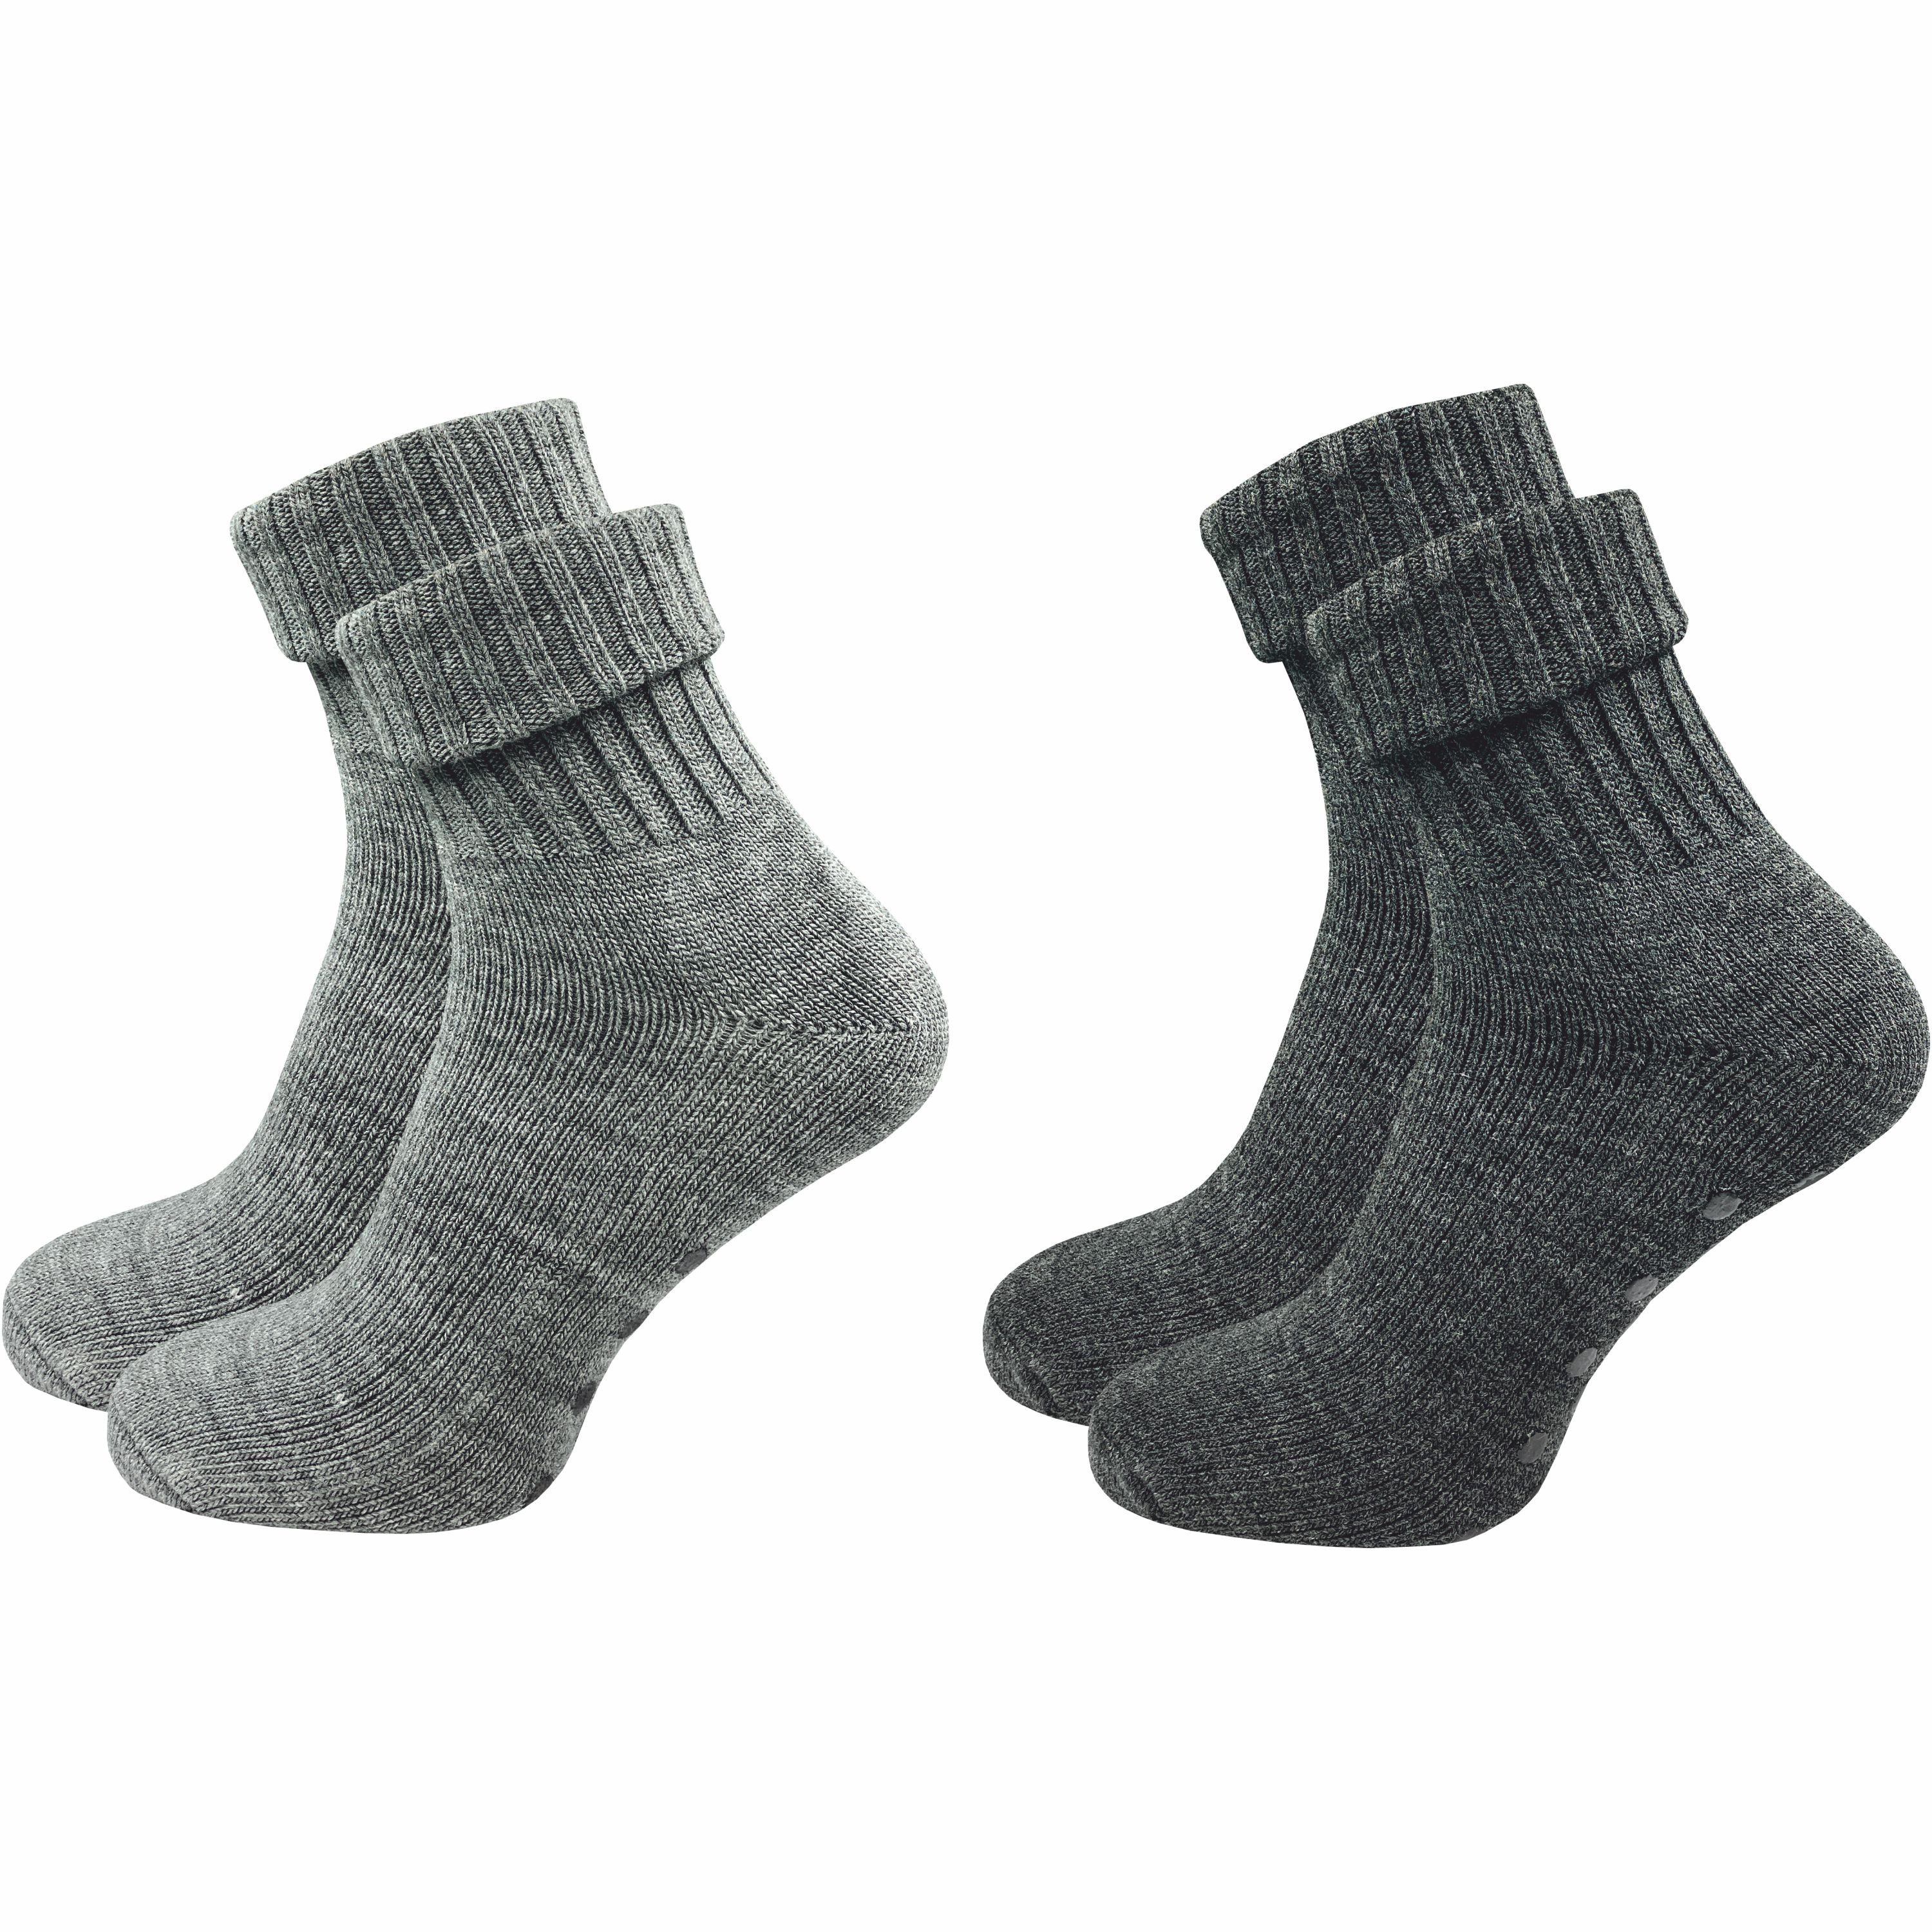 GAWILO ABS-Socken für Damen aus Wolle für extra warme Füße, Stoppersocken (2 Paar) Rutschfeste Hausschuhsocken, Weiche & kuschlige Socken mit Noppen grau & dunkelgrau | Wintersocken